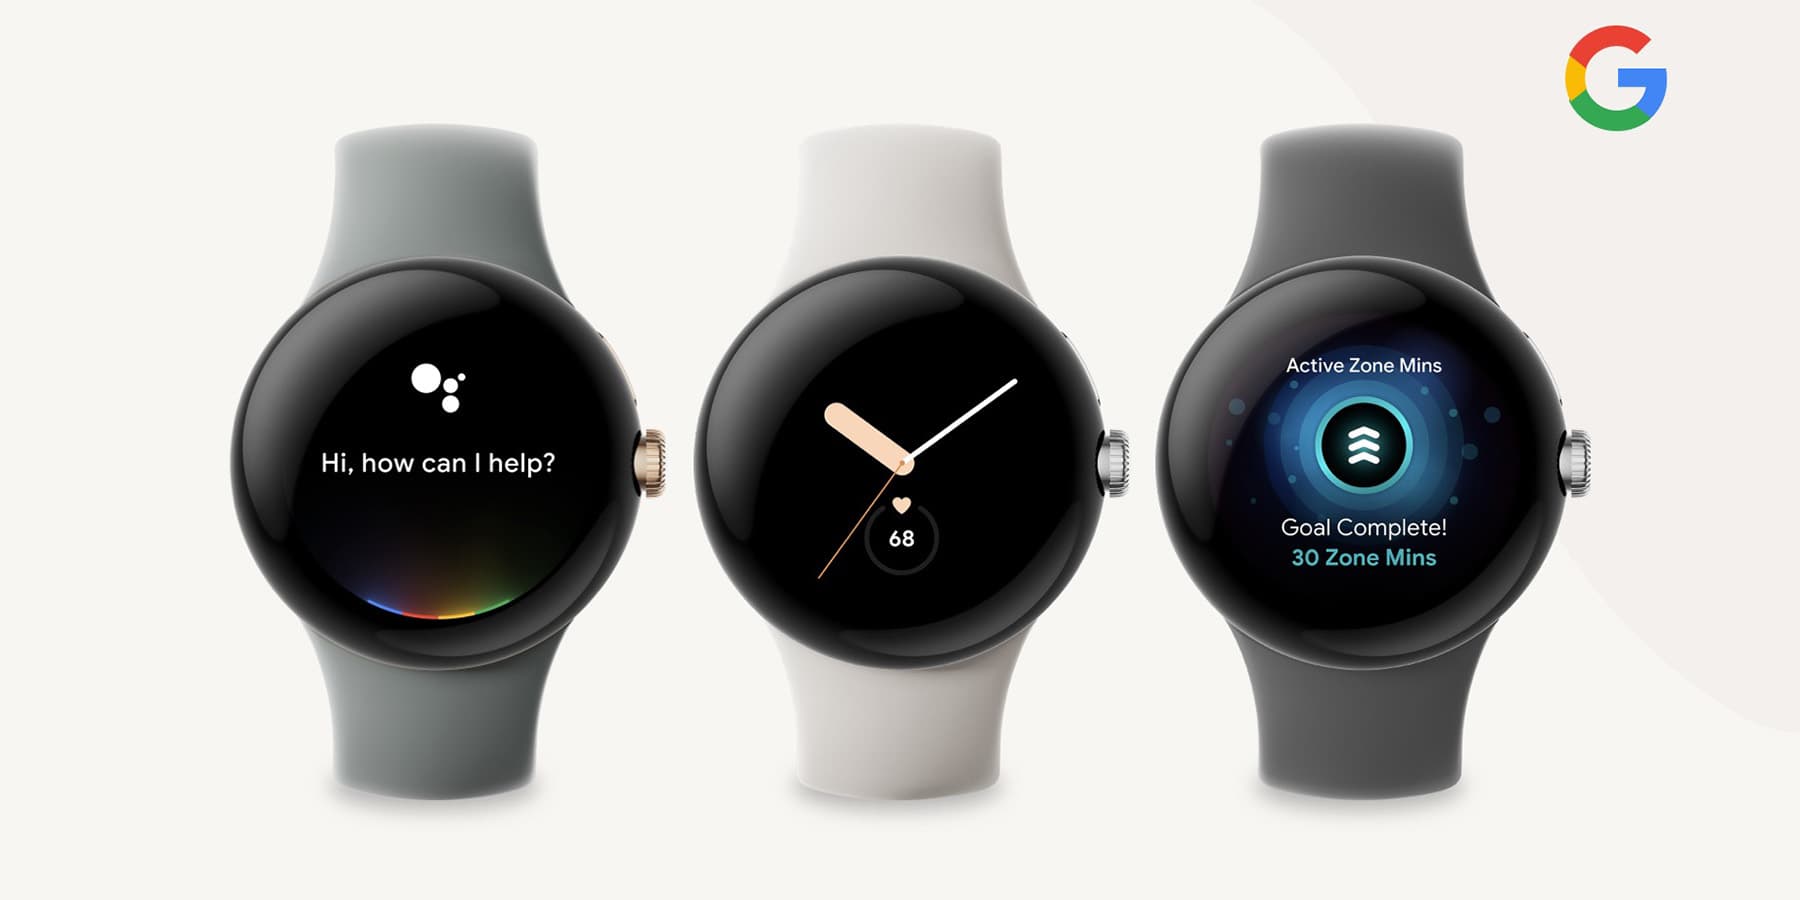 Rumores: Google presentará el Pixel Watch junto al Pixel 7 y Pixel 7 Pro, el reloj costará unos 400 dólares